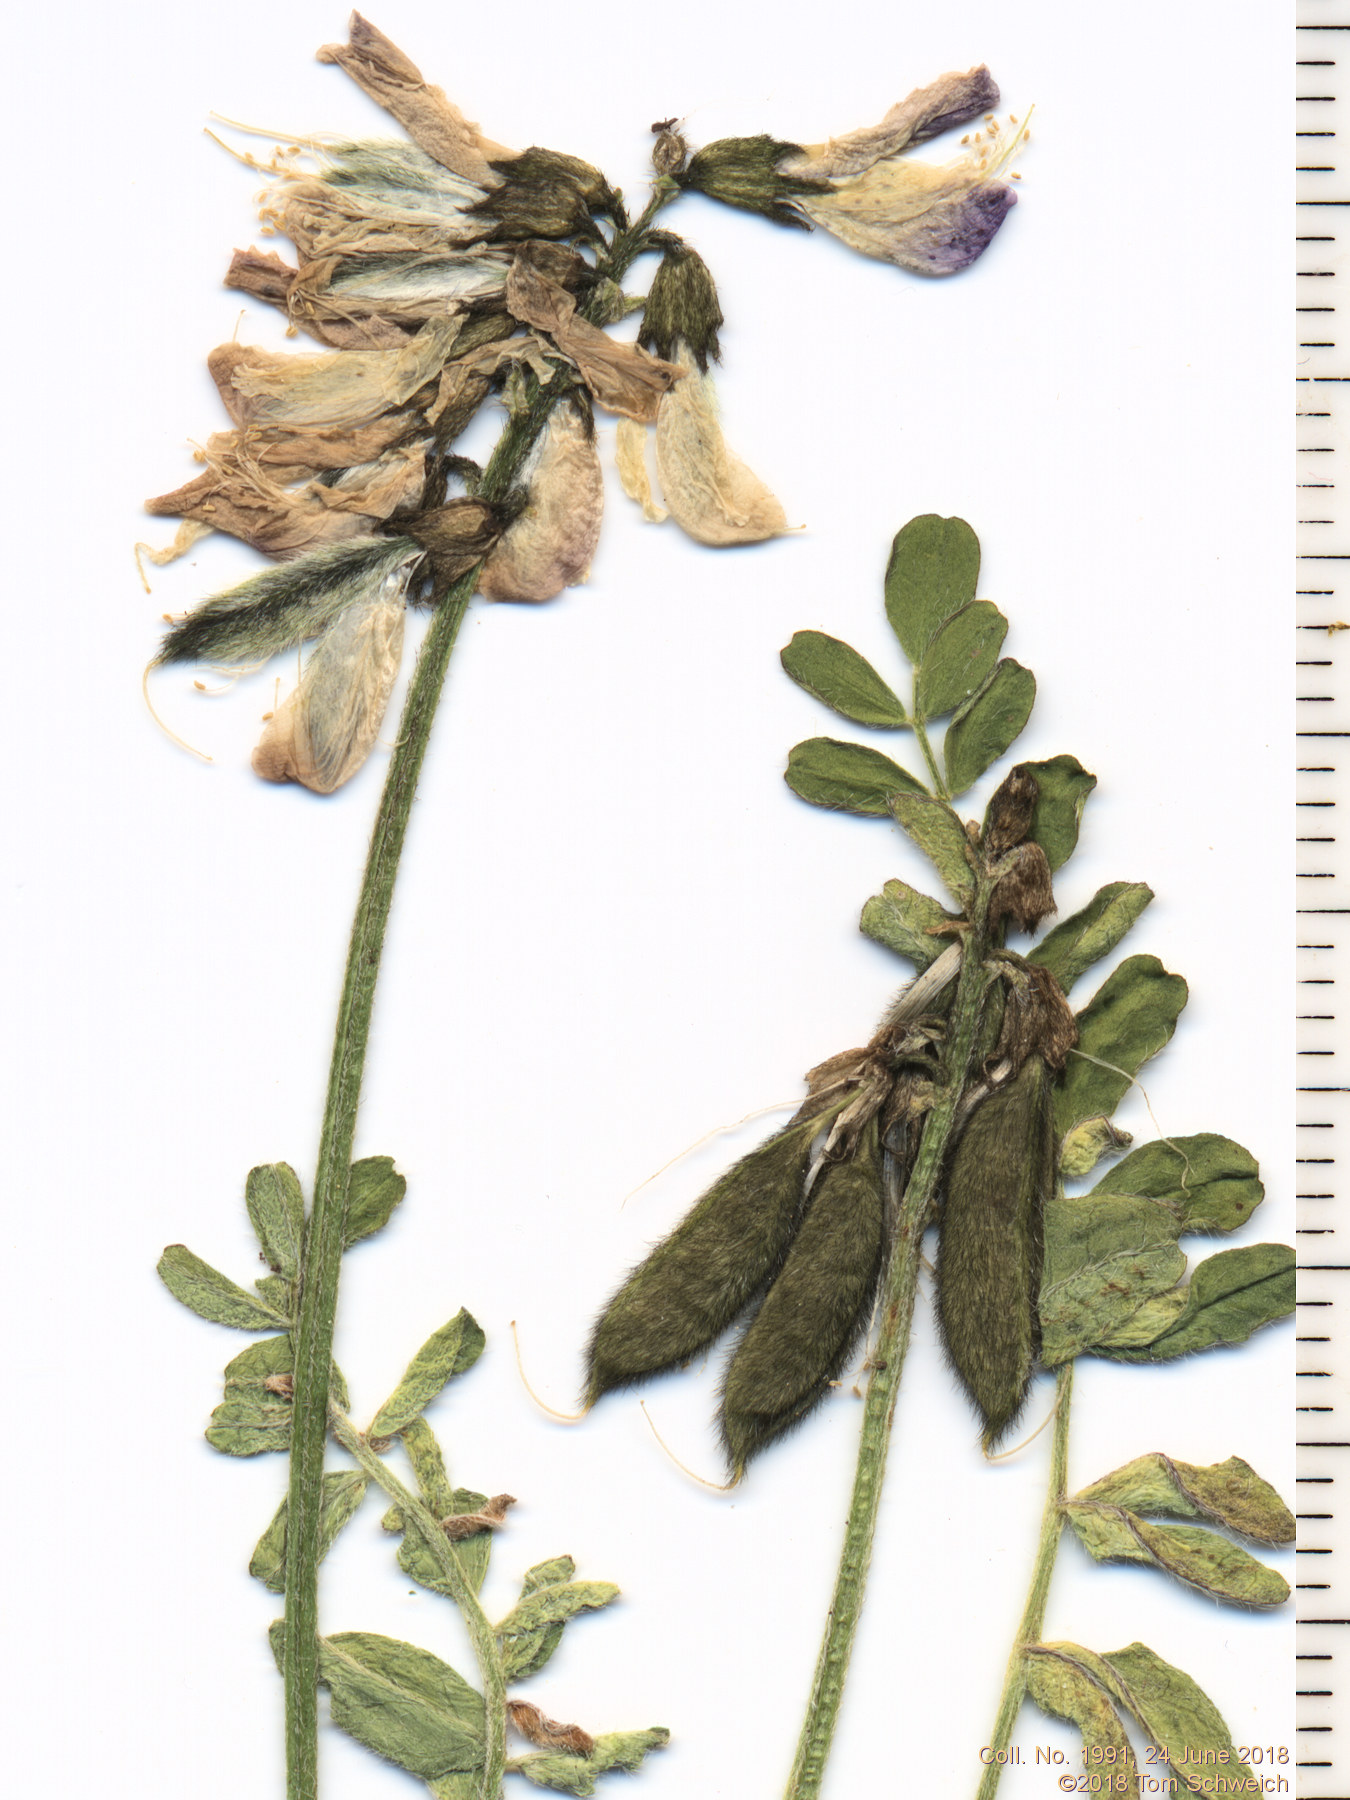 Fabaceae Astragalus alpinus